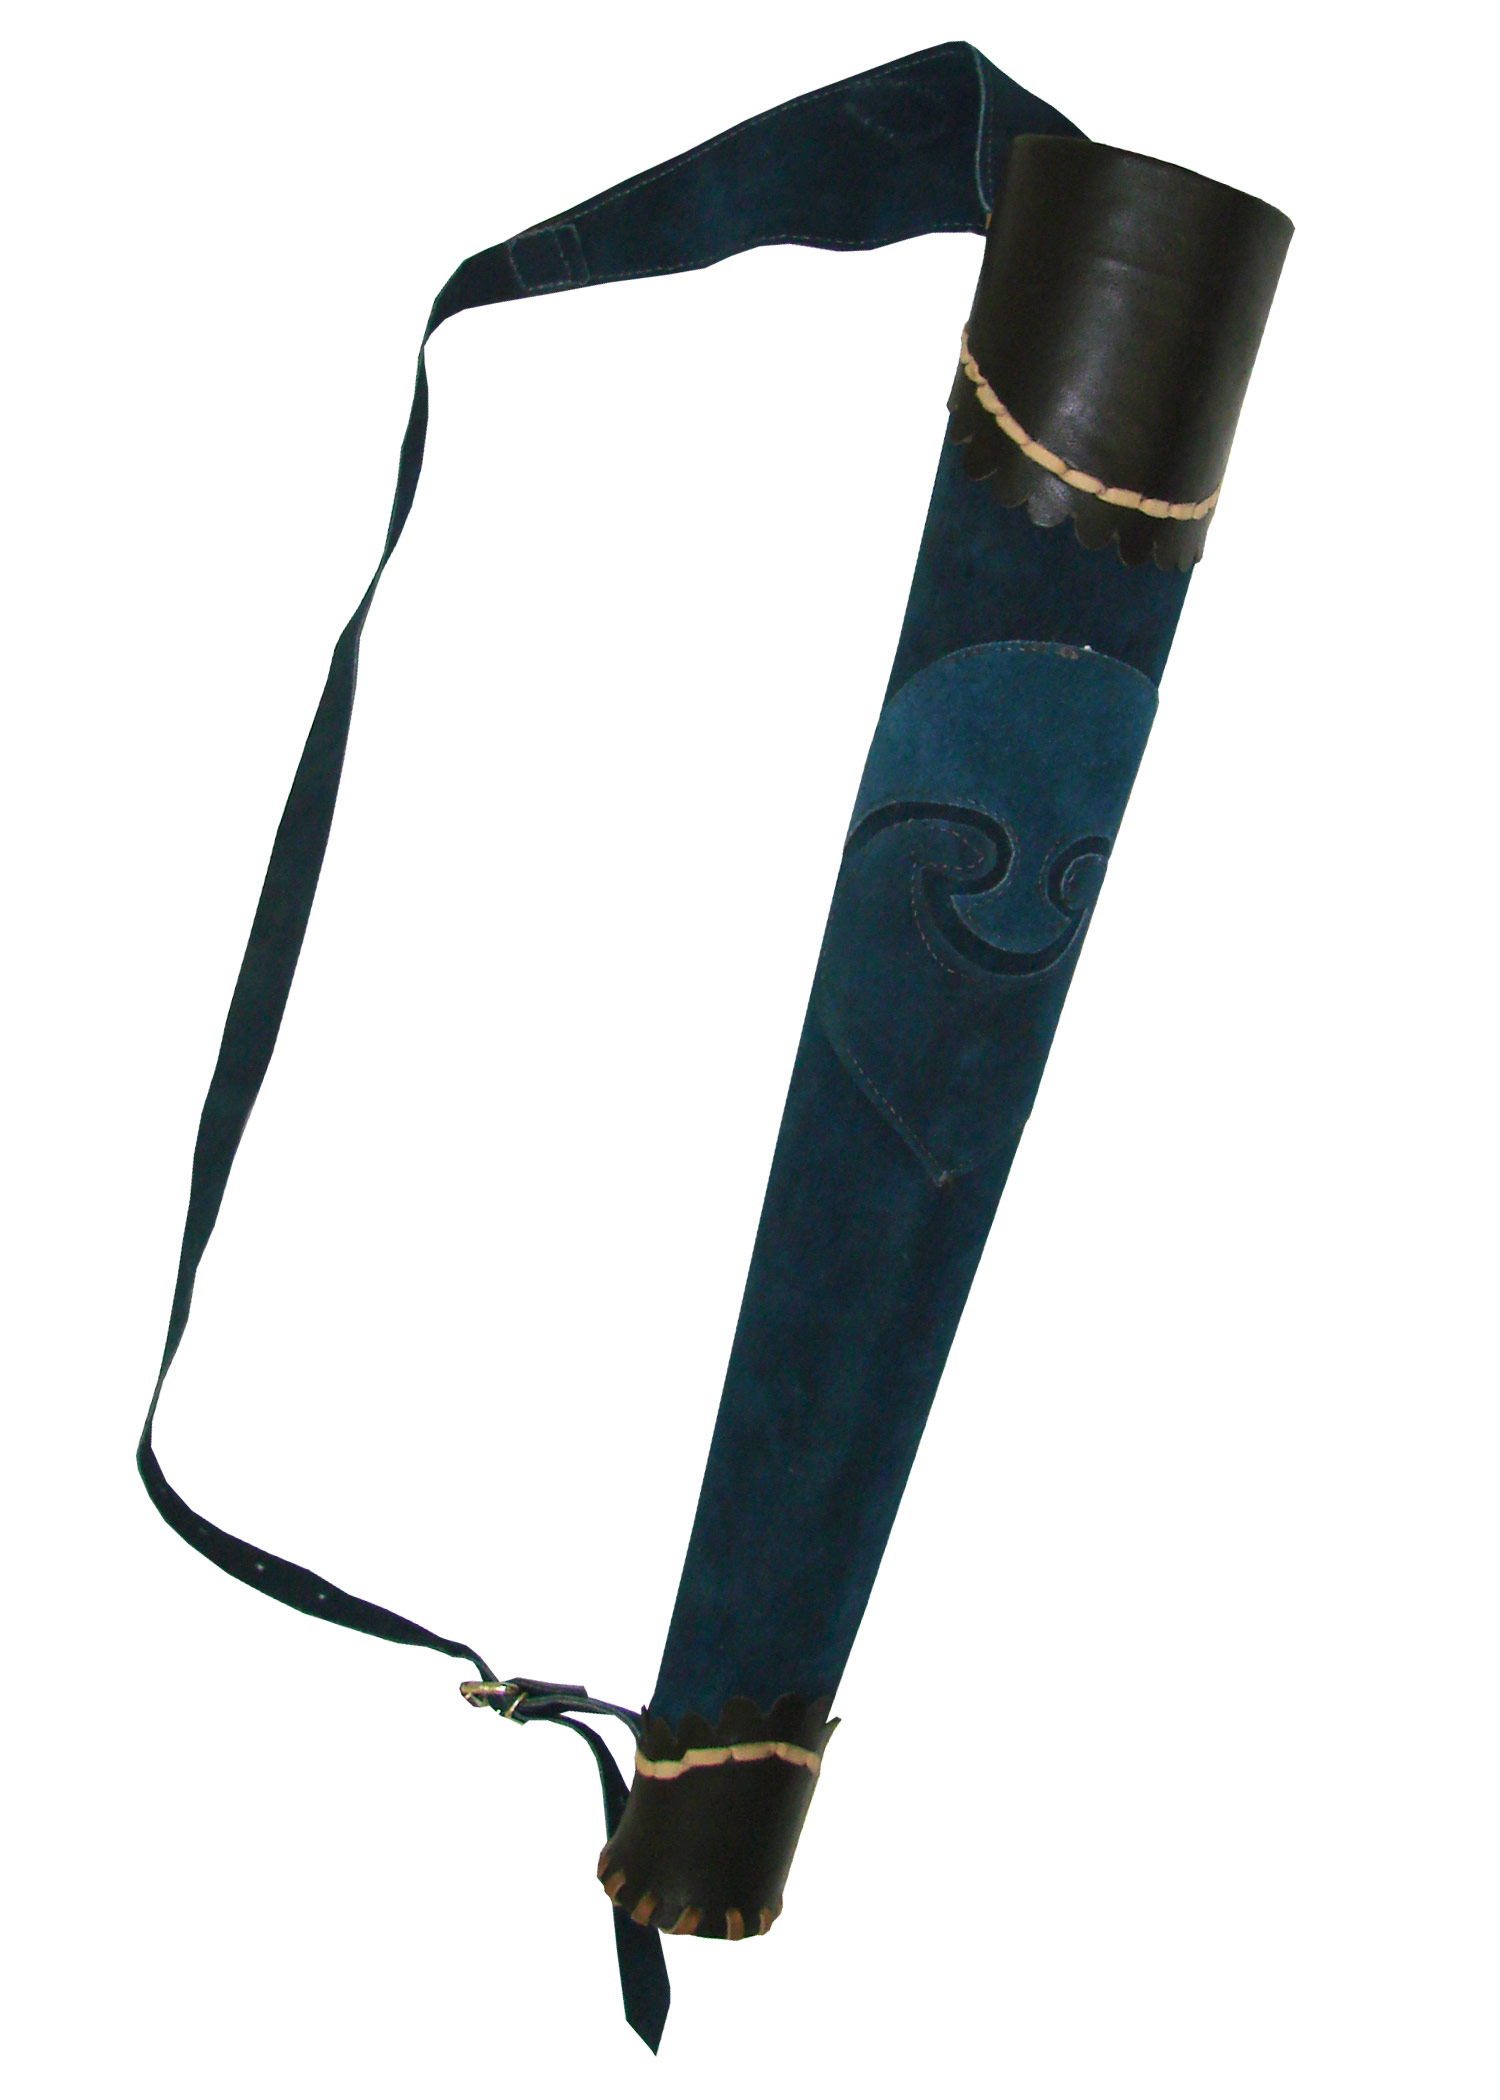 Köcher Archer aus Leder, für 8 LARP-Pfeile, Farbe blau/schwarz